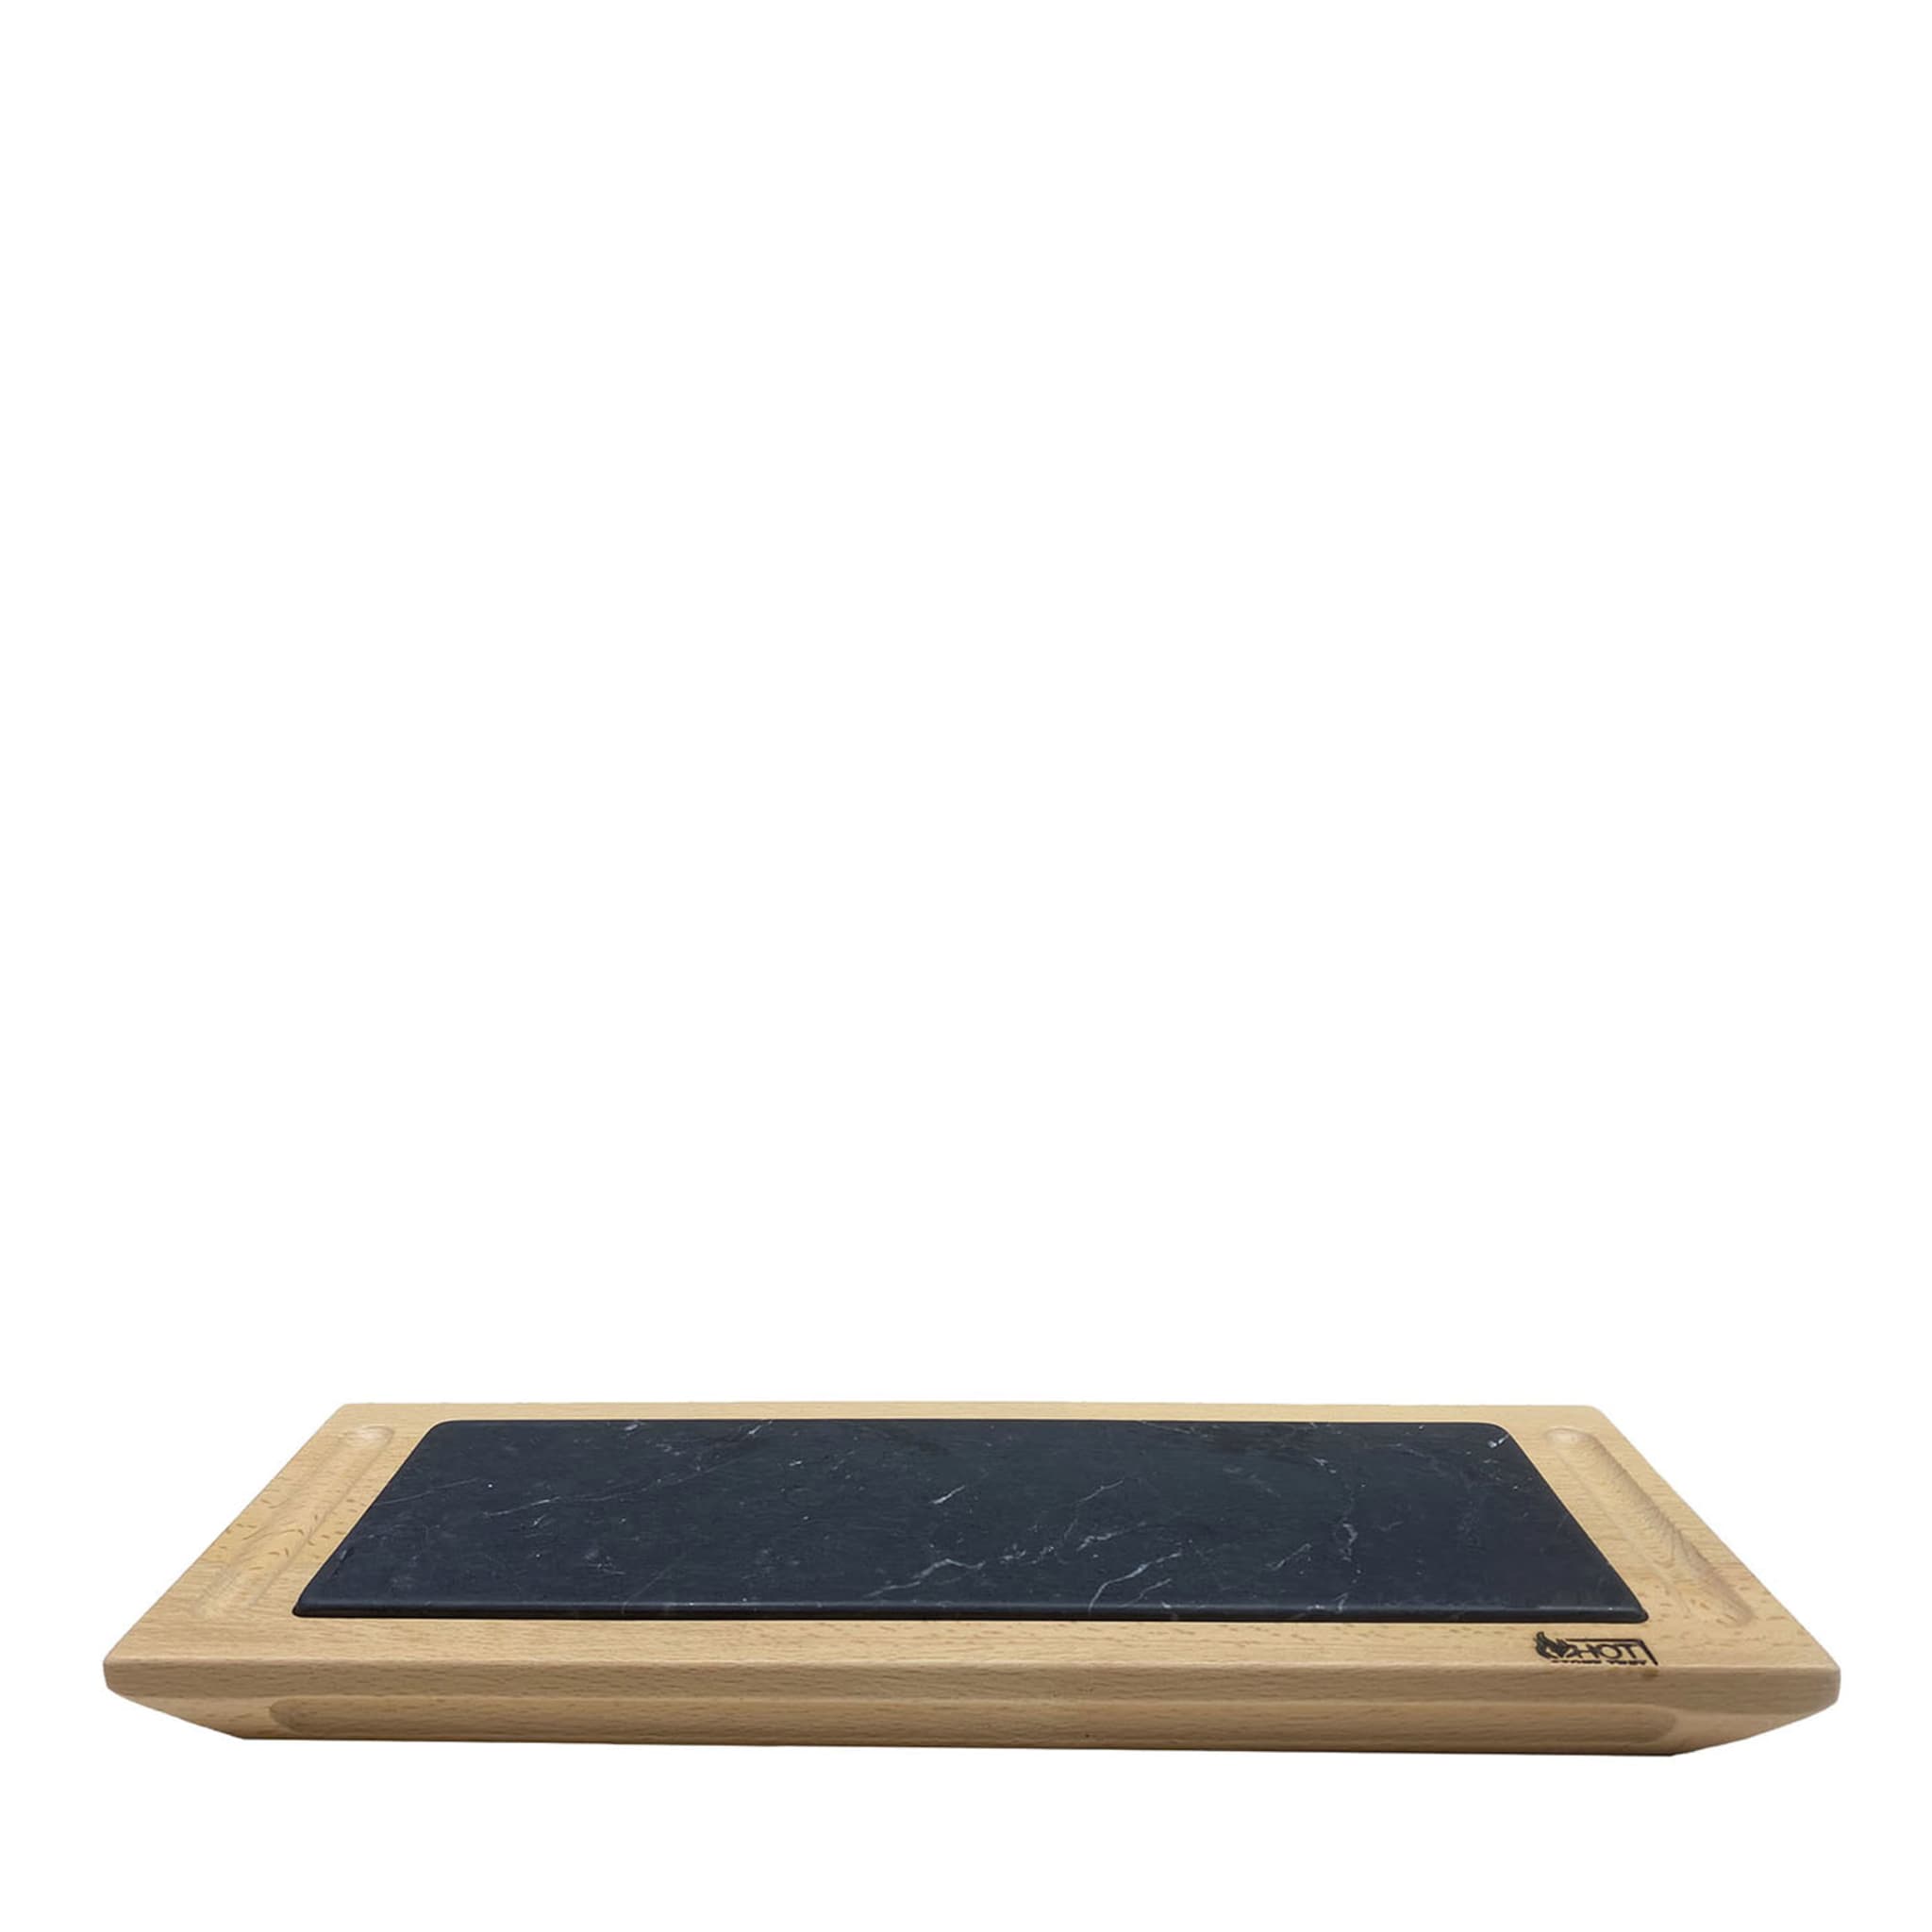 Flaches schwarzes Marquinia-Tablett mit Holzsockel - Hauptansicht